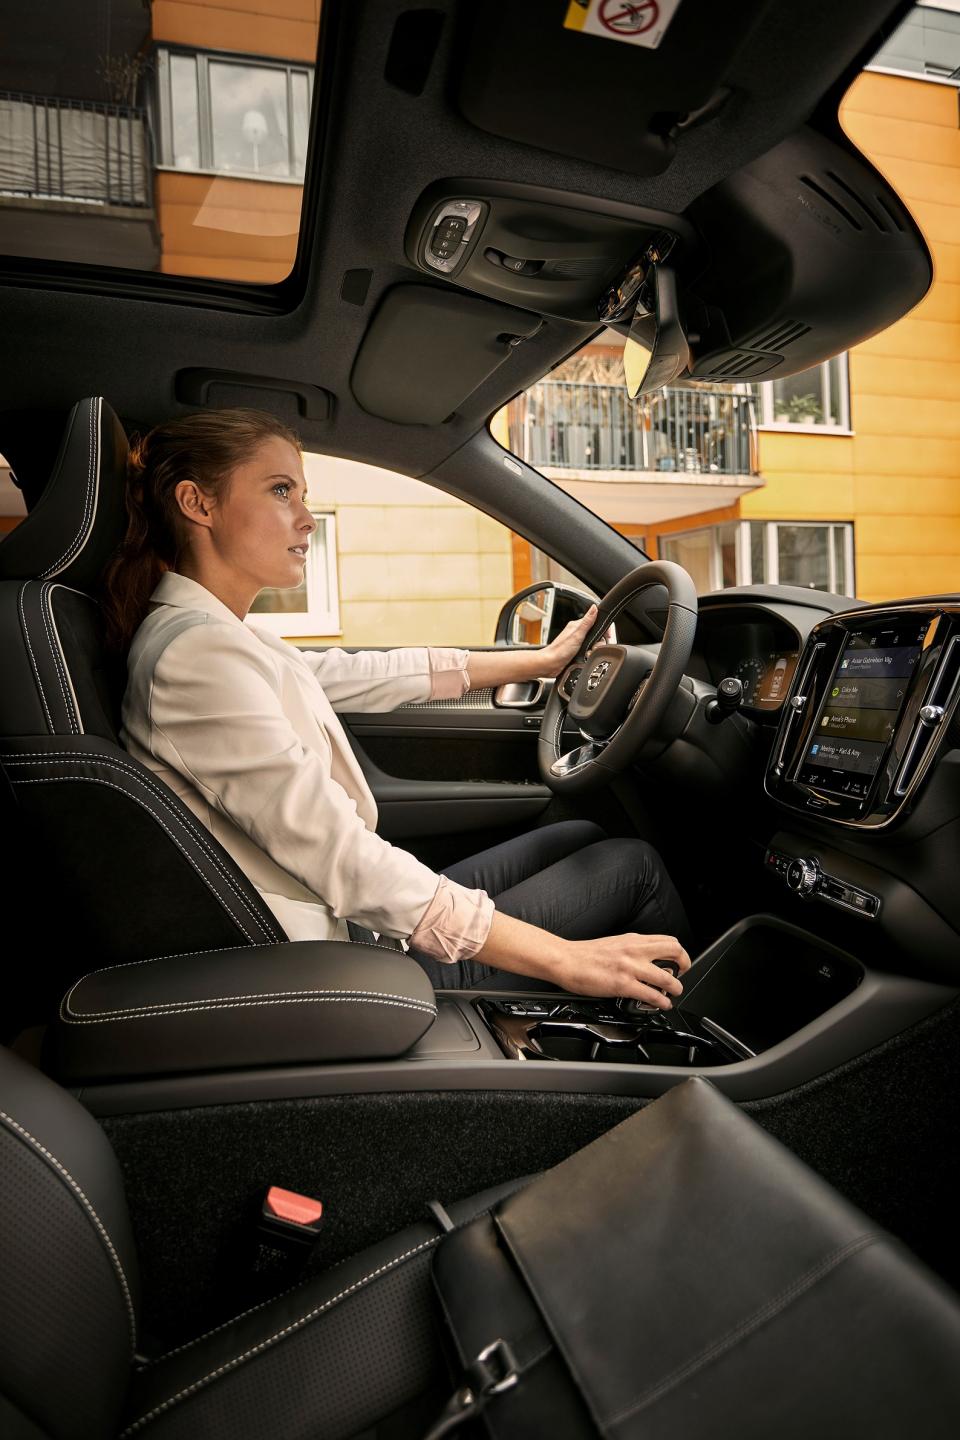  Η Volvo συνεργάζεται με την Google για την επόμενη γενιά συστημάτων Infotainment